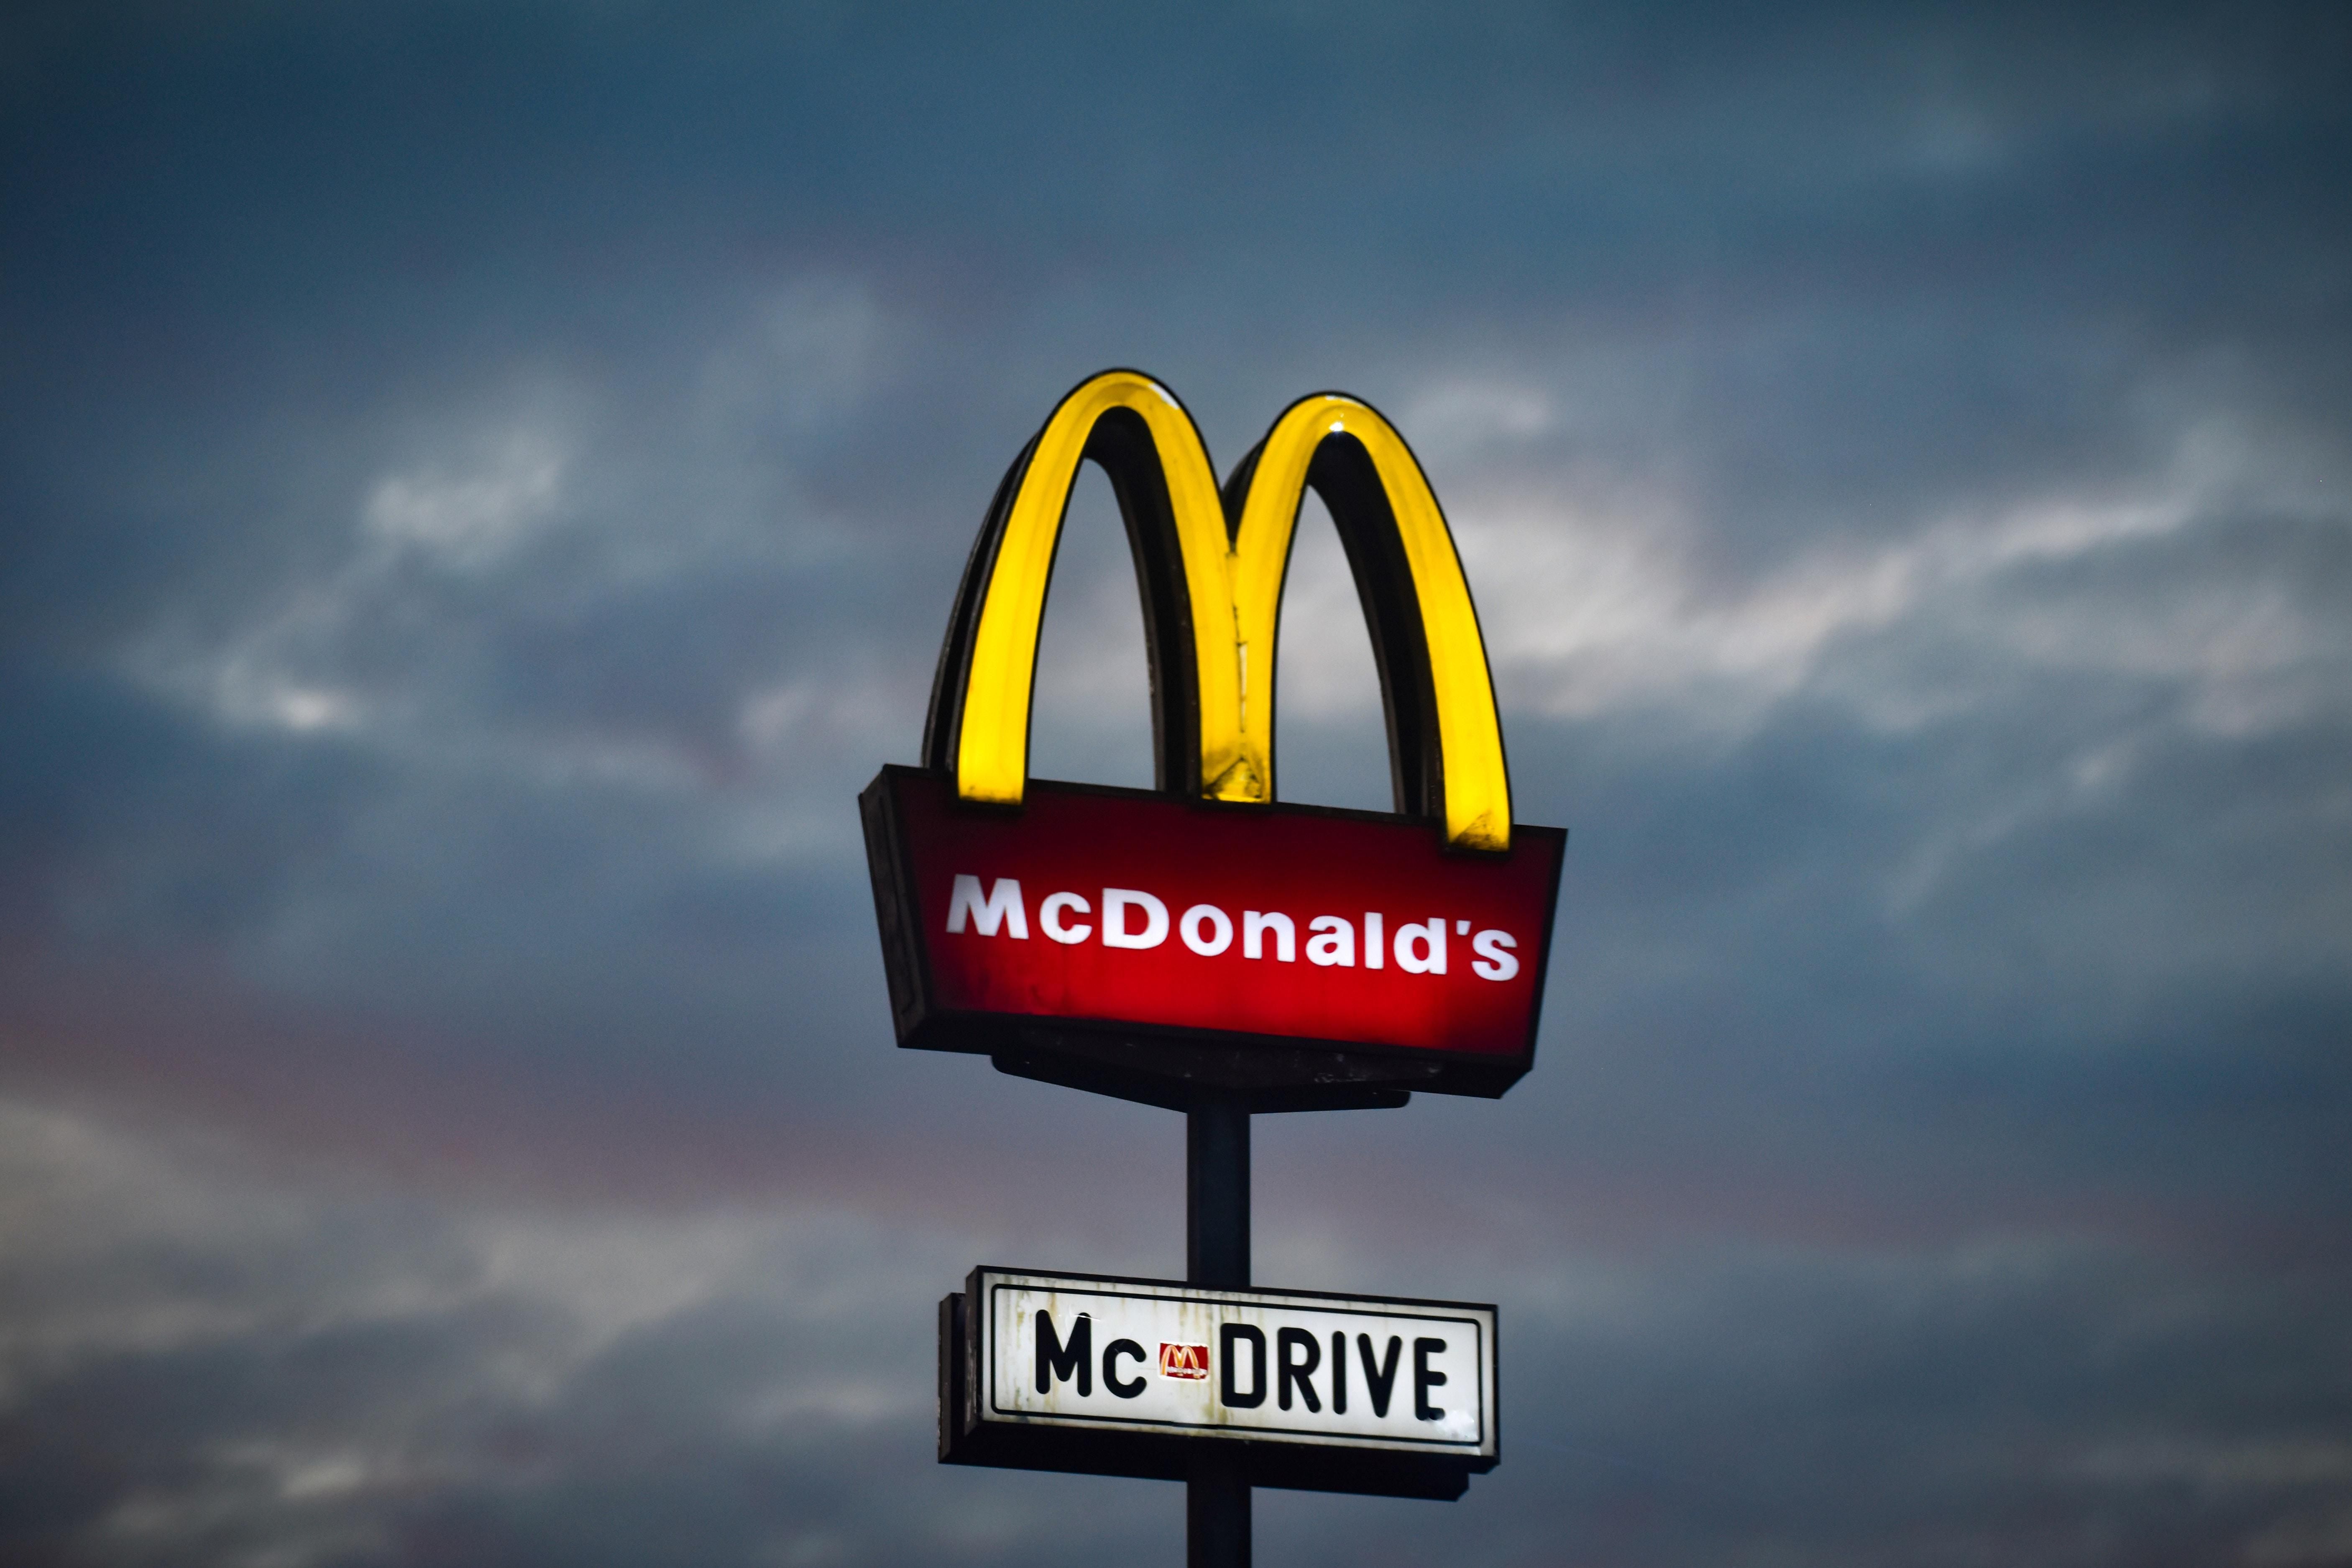 Fehéren, pirosan és sárgán világító McDonald's logó, alatta McDrive táblával